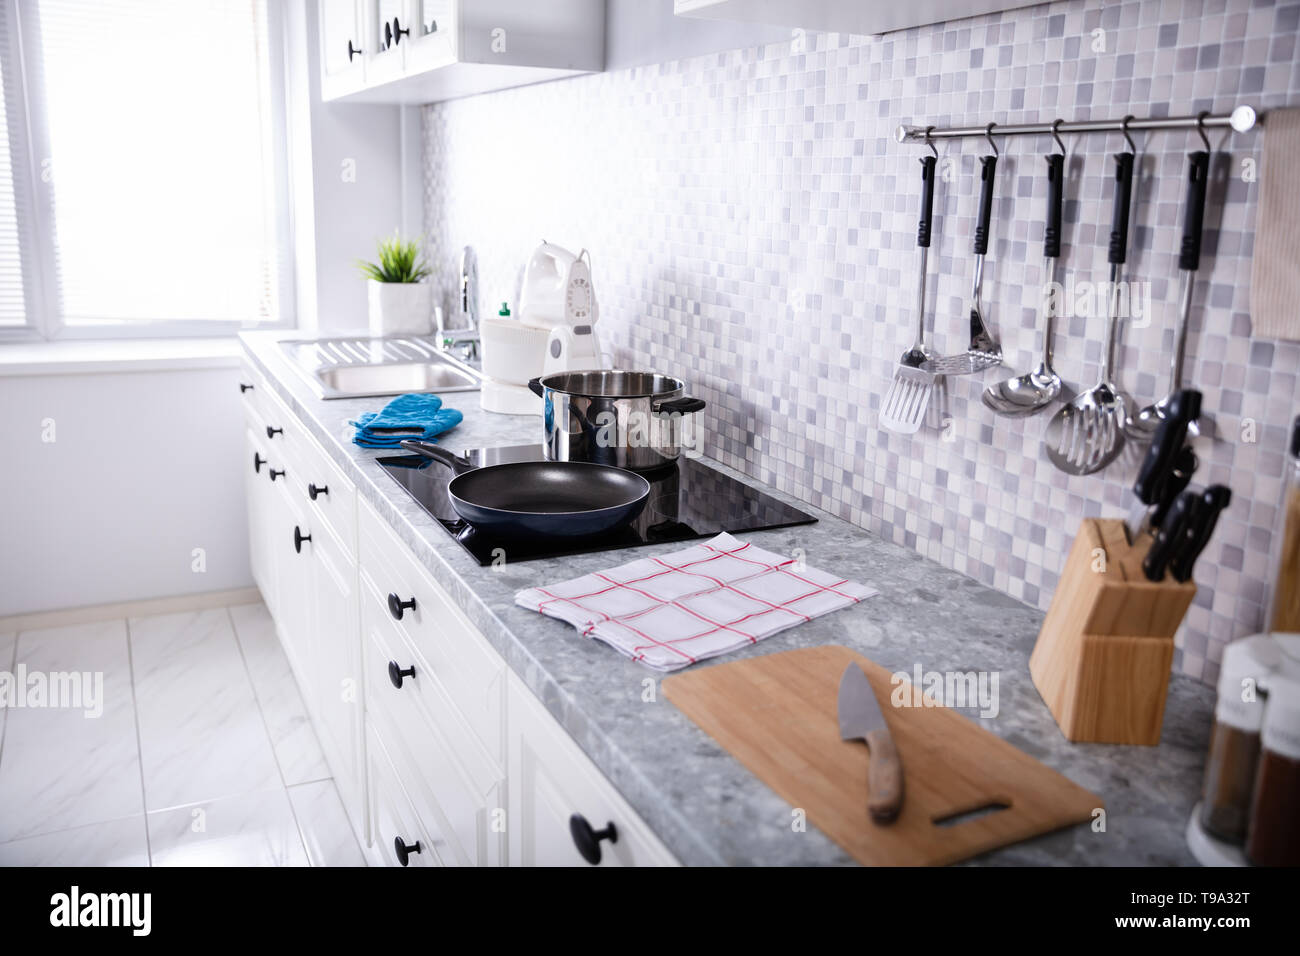 Vista di un moderno angolo cottura con utensili da cucina e fornelli a induzione Foto Stock